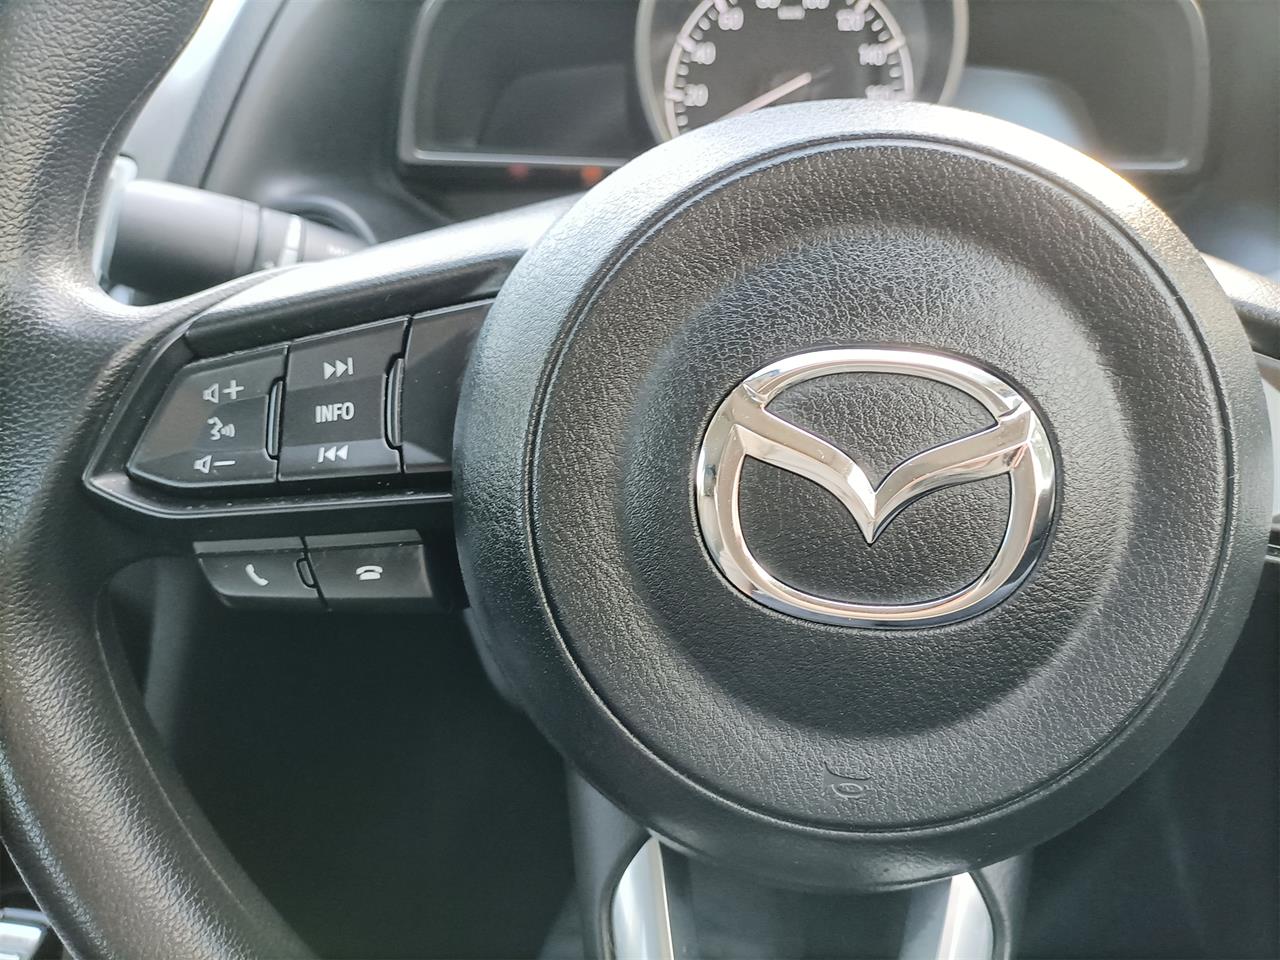 2018 Mazda Axela